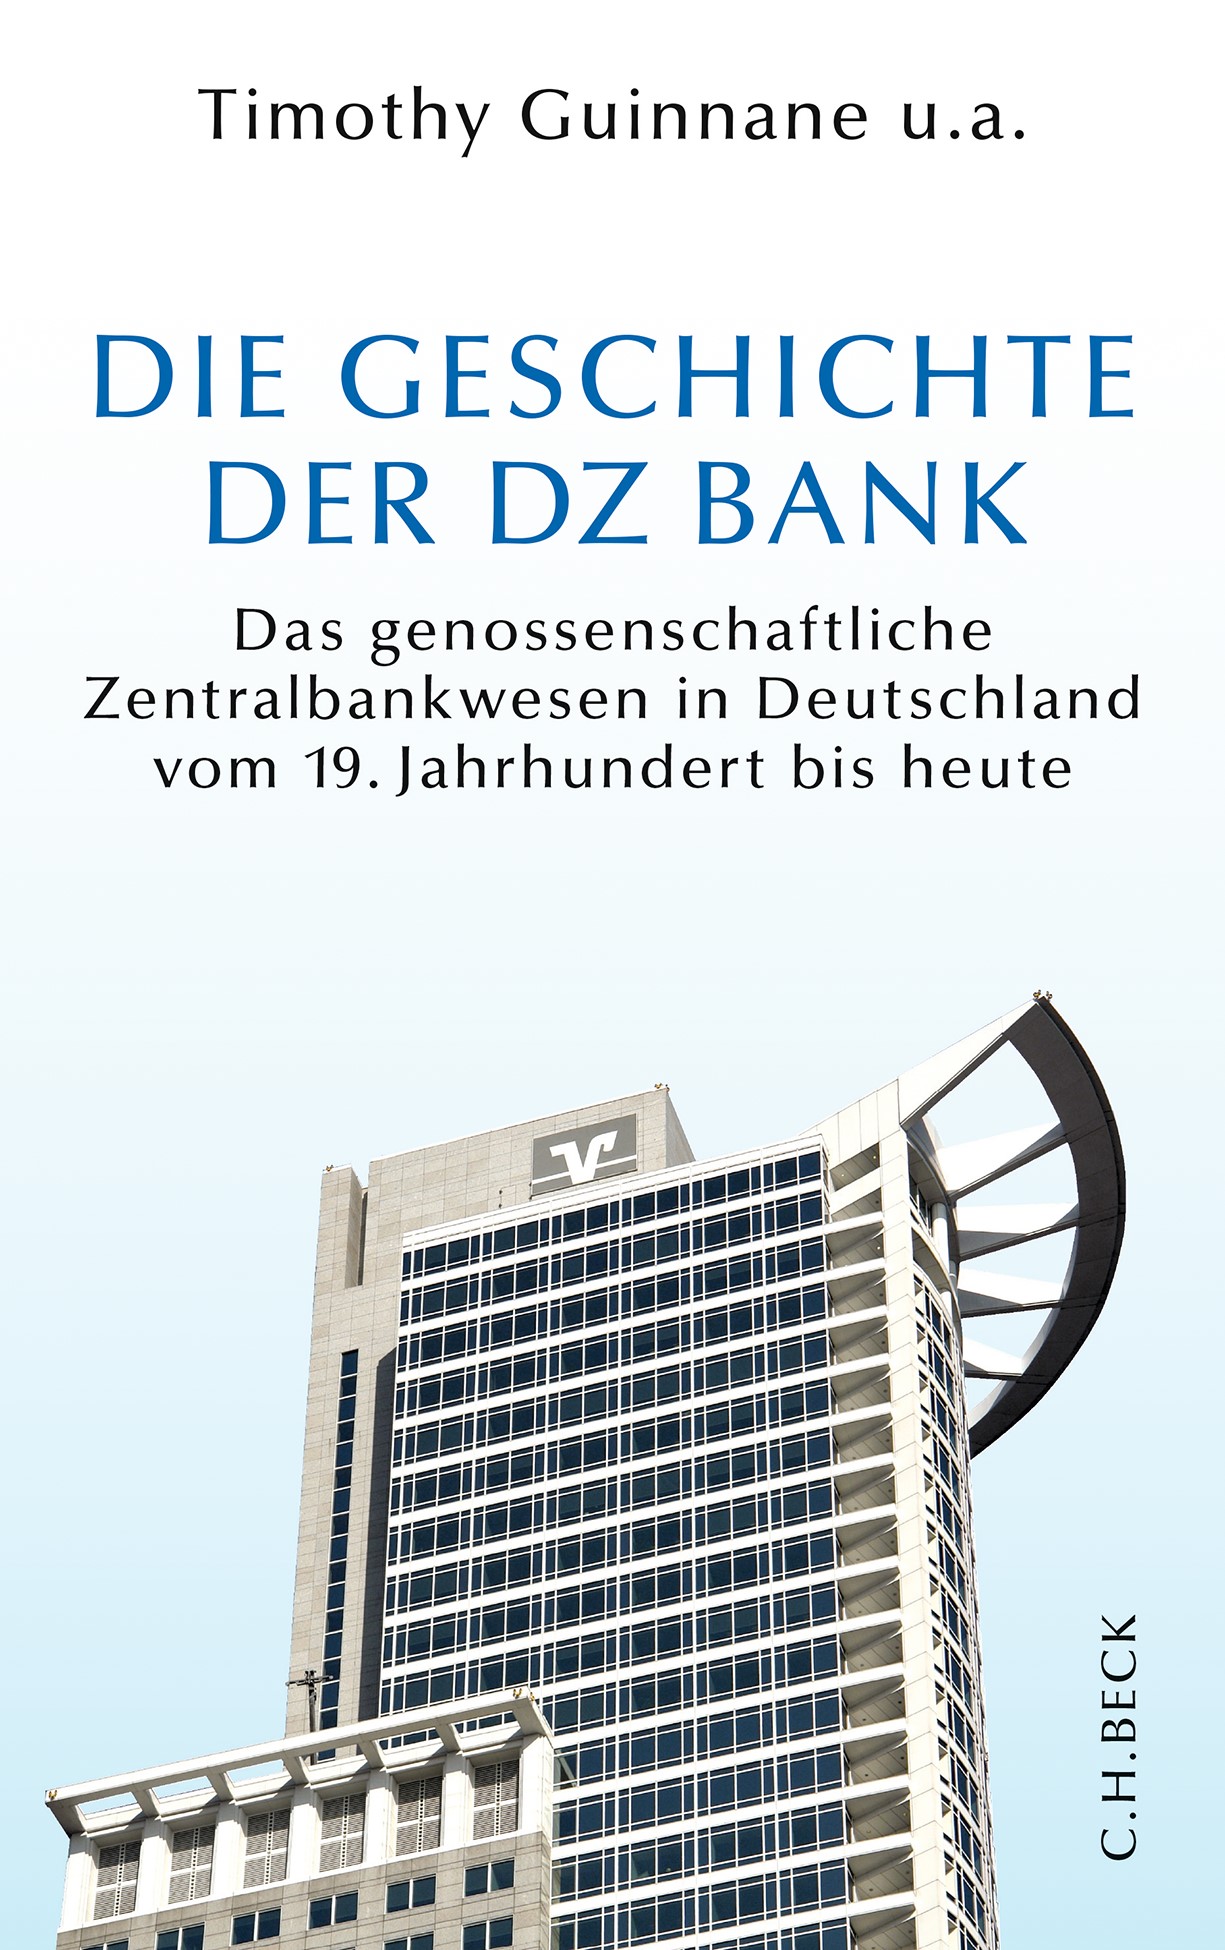 Cover: Guinnane, Timothy u.a., Die Geschichte der DZ BANK